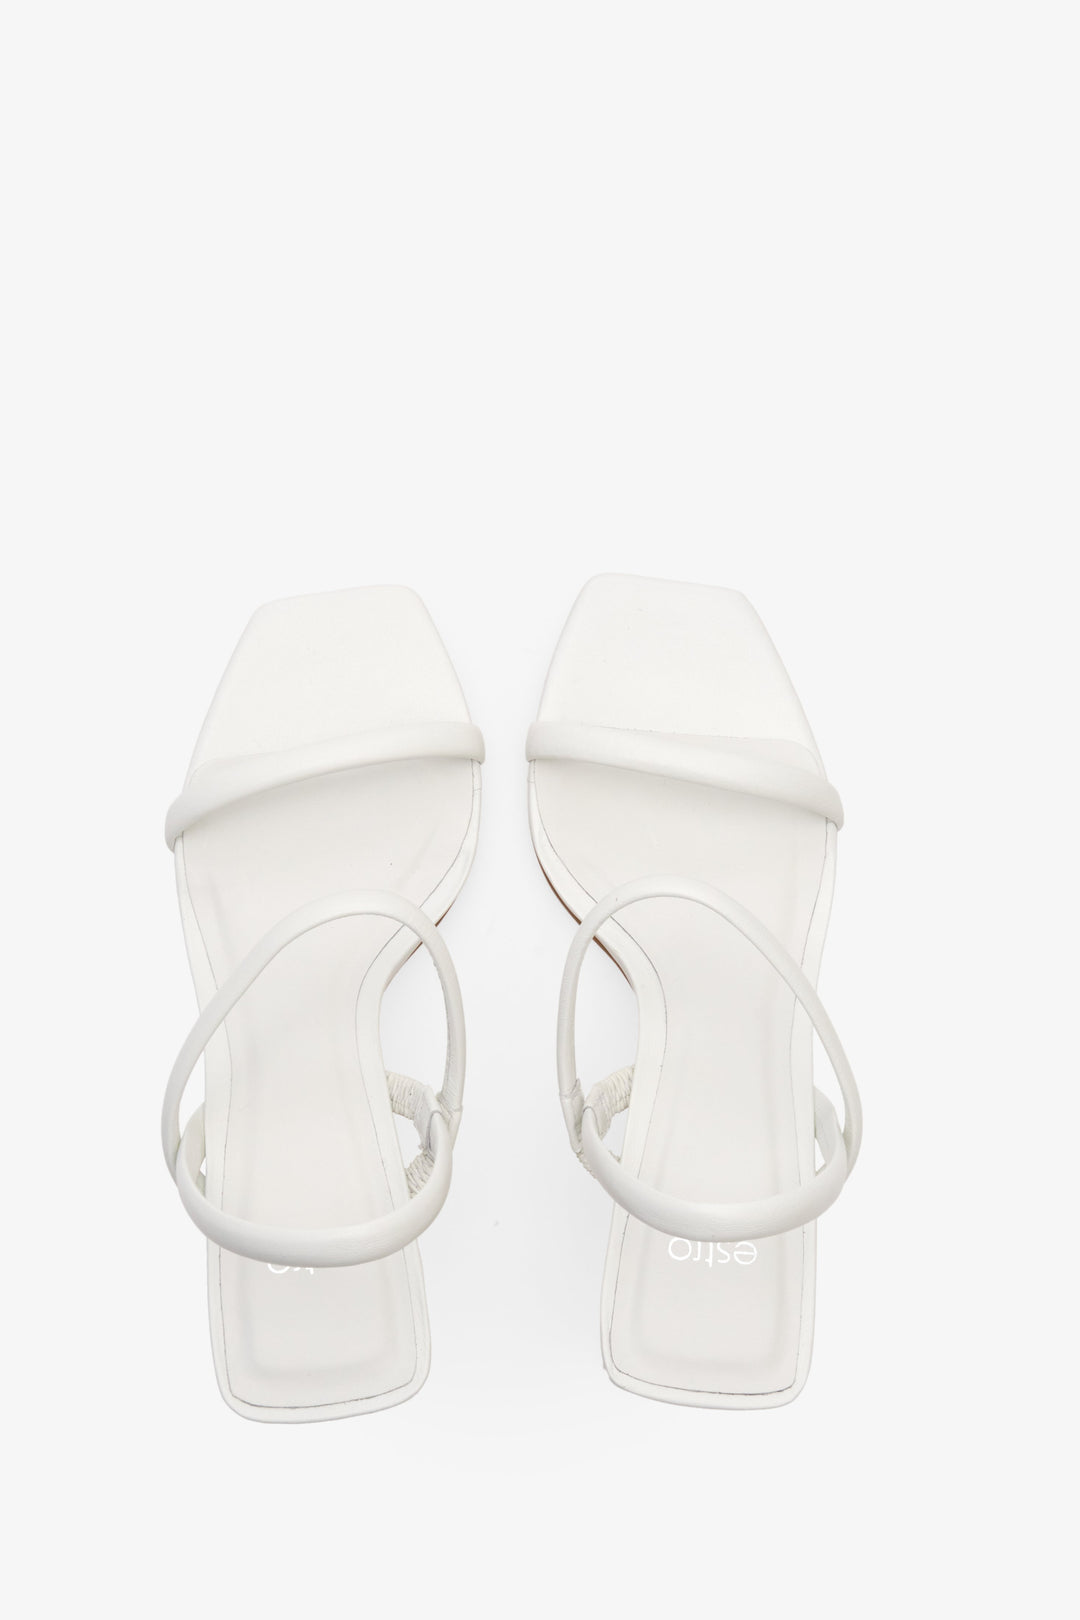 Skórzane, białe sandały damskie na stabilnym obcasie Estro - prezentacja modelu z góry.